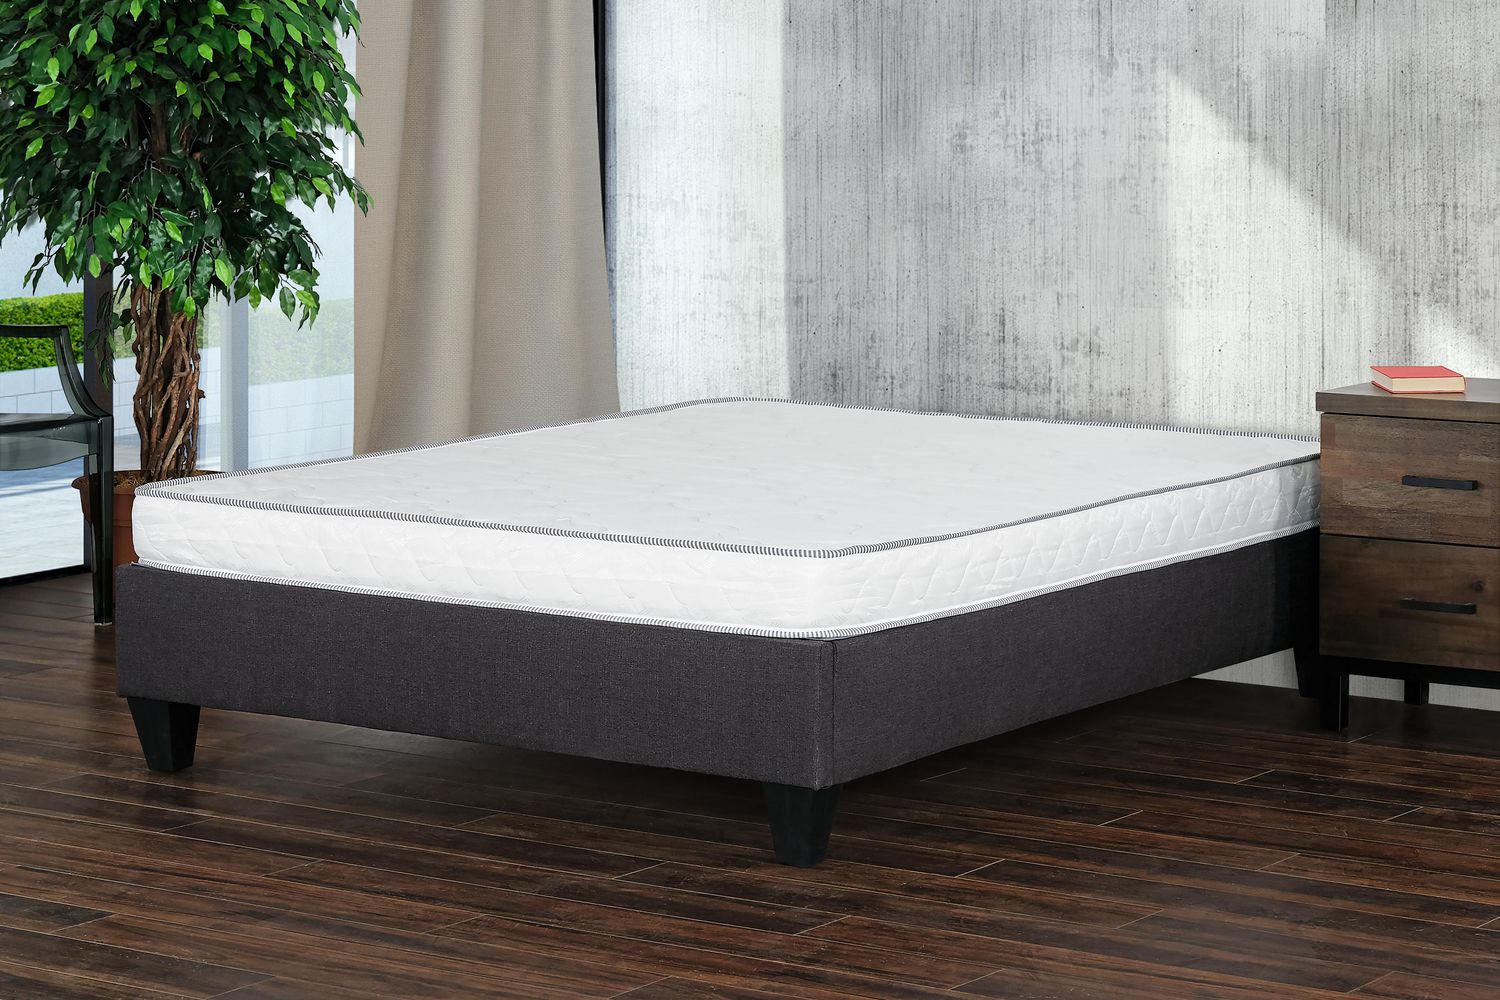 firm foam mattress for travel trailer